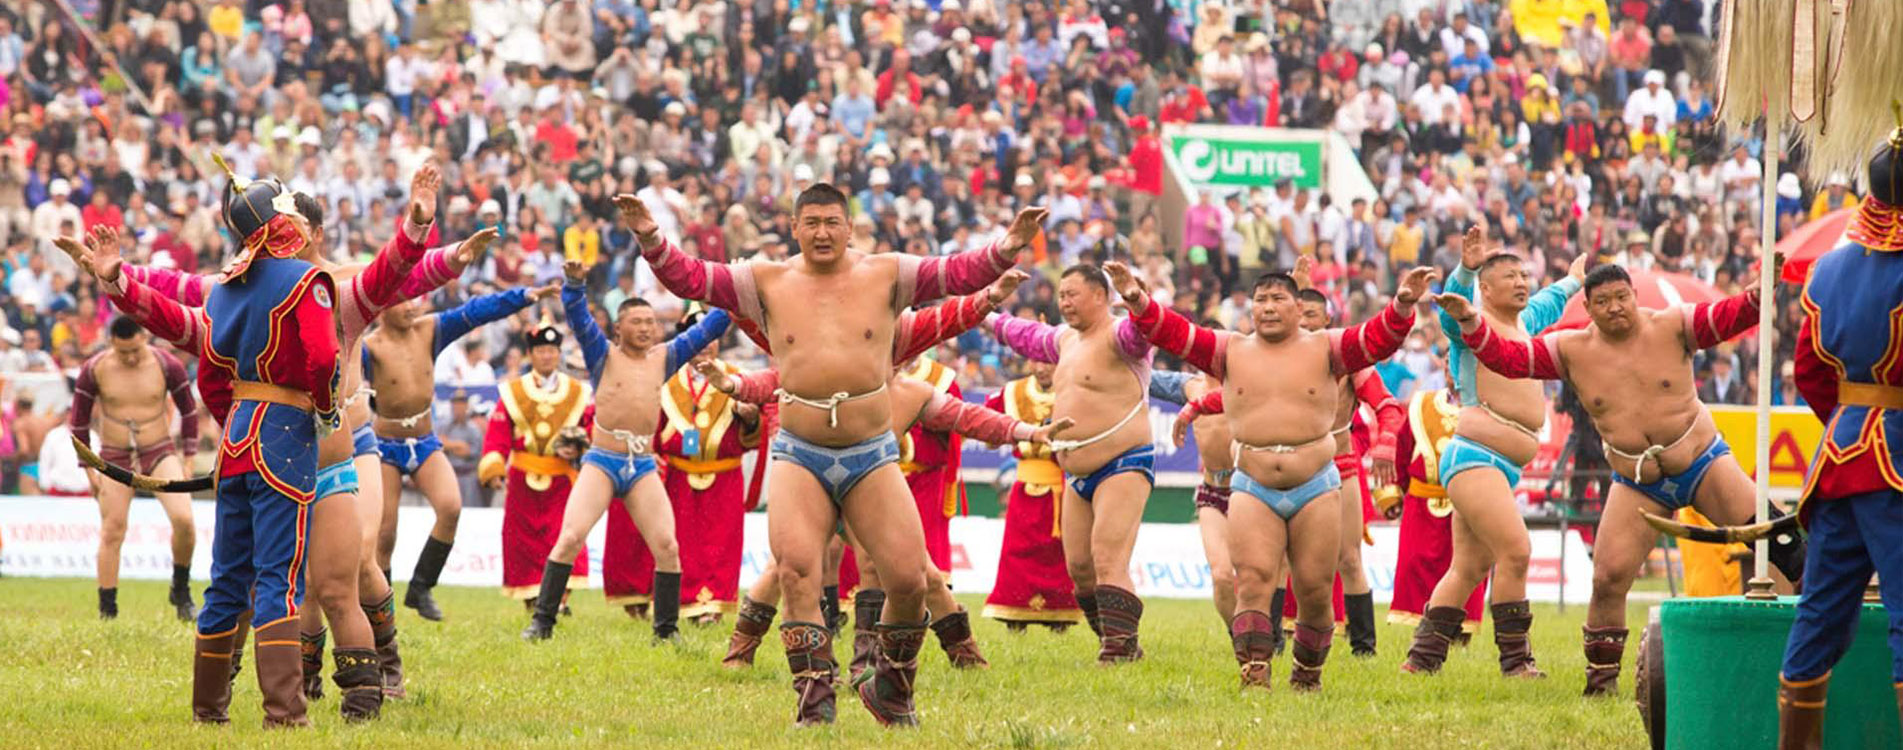 c-2-naadam-gobi-festival-national-wrestling